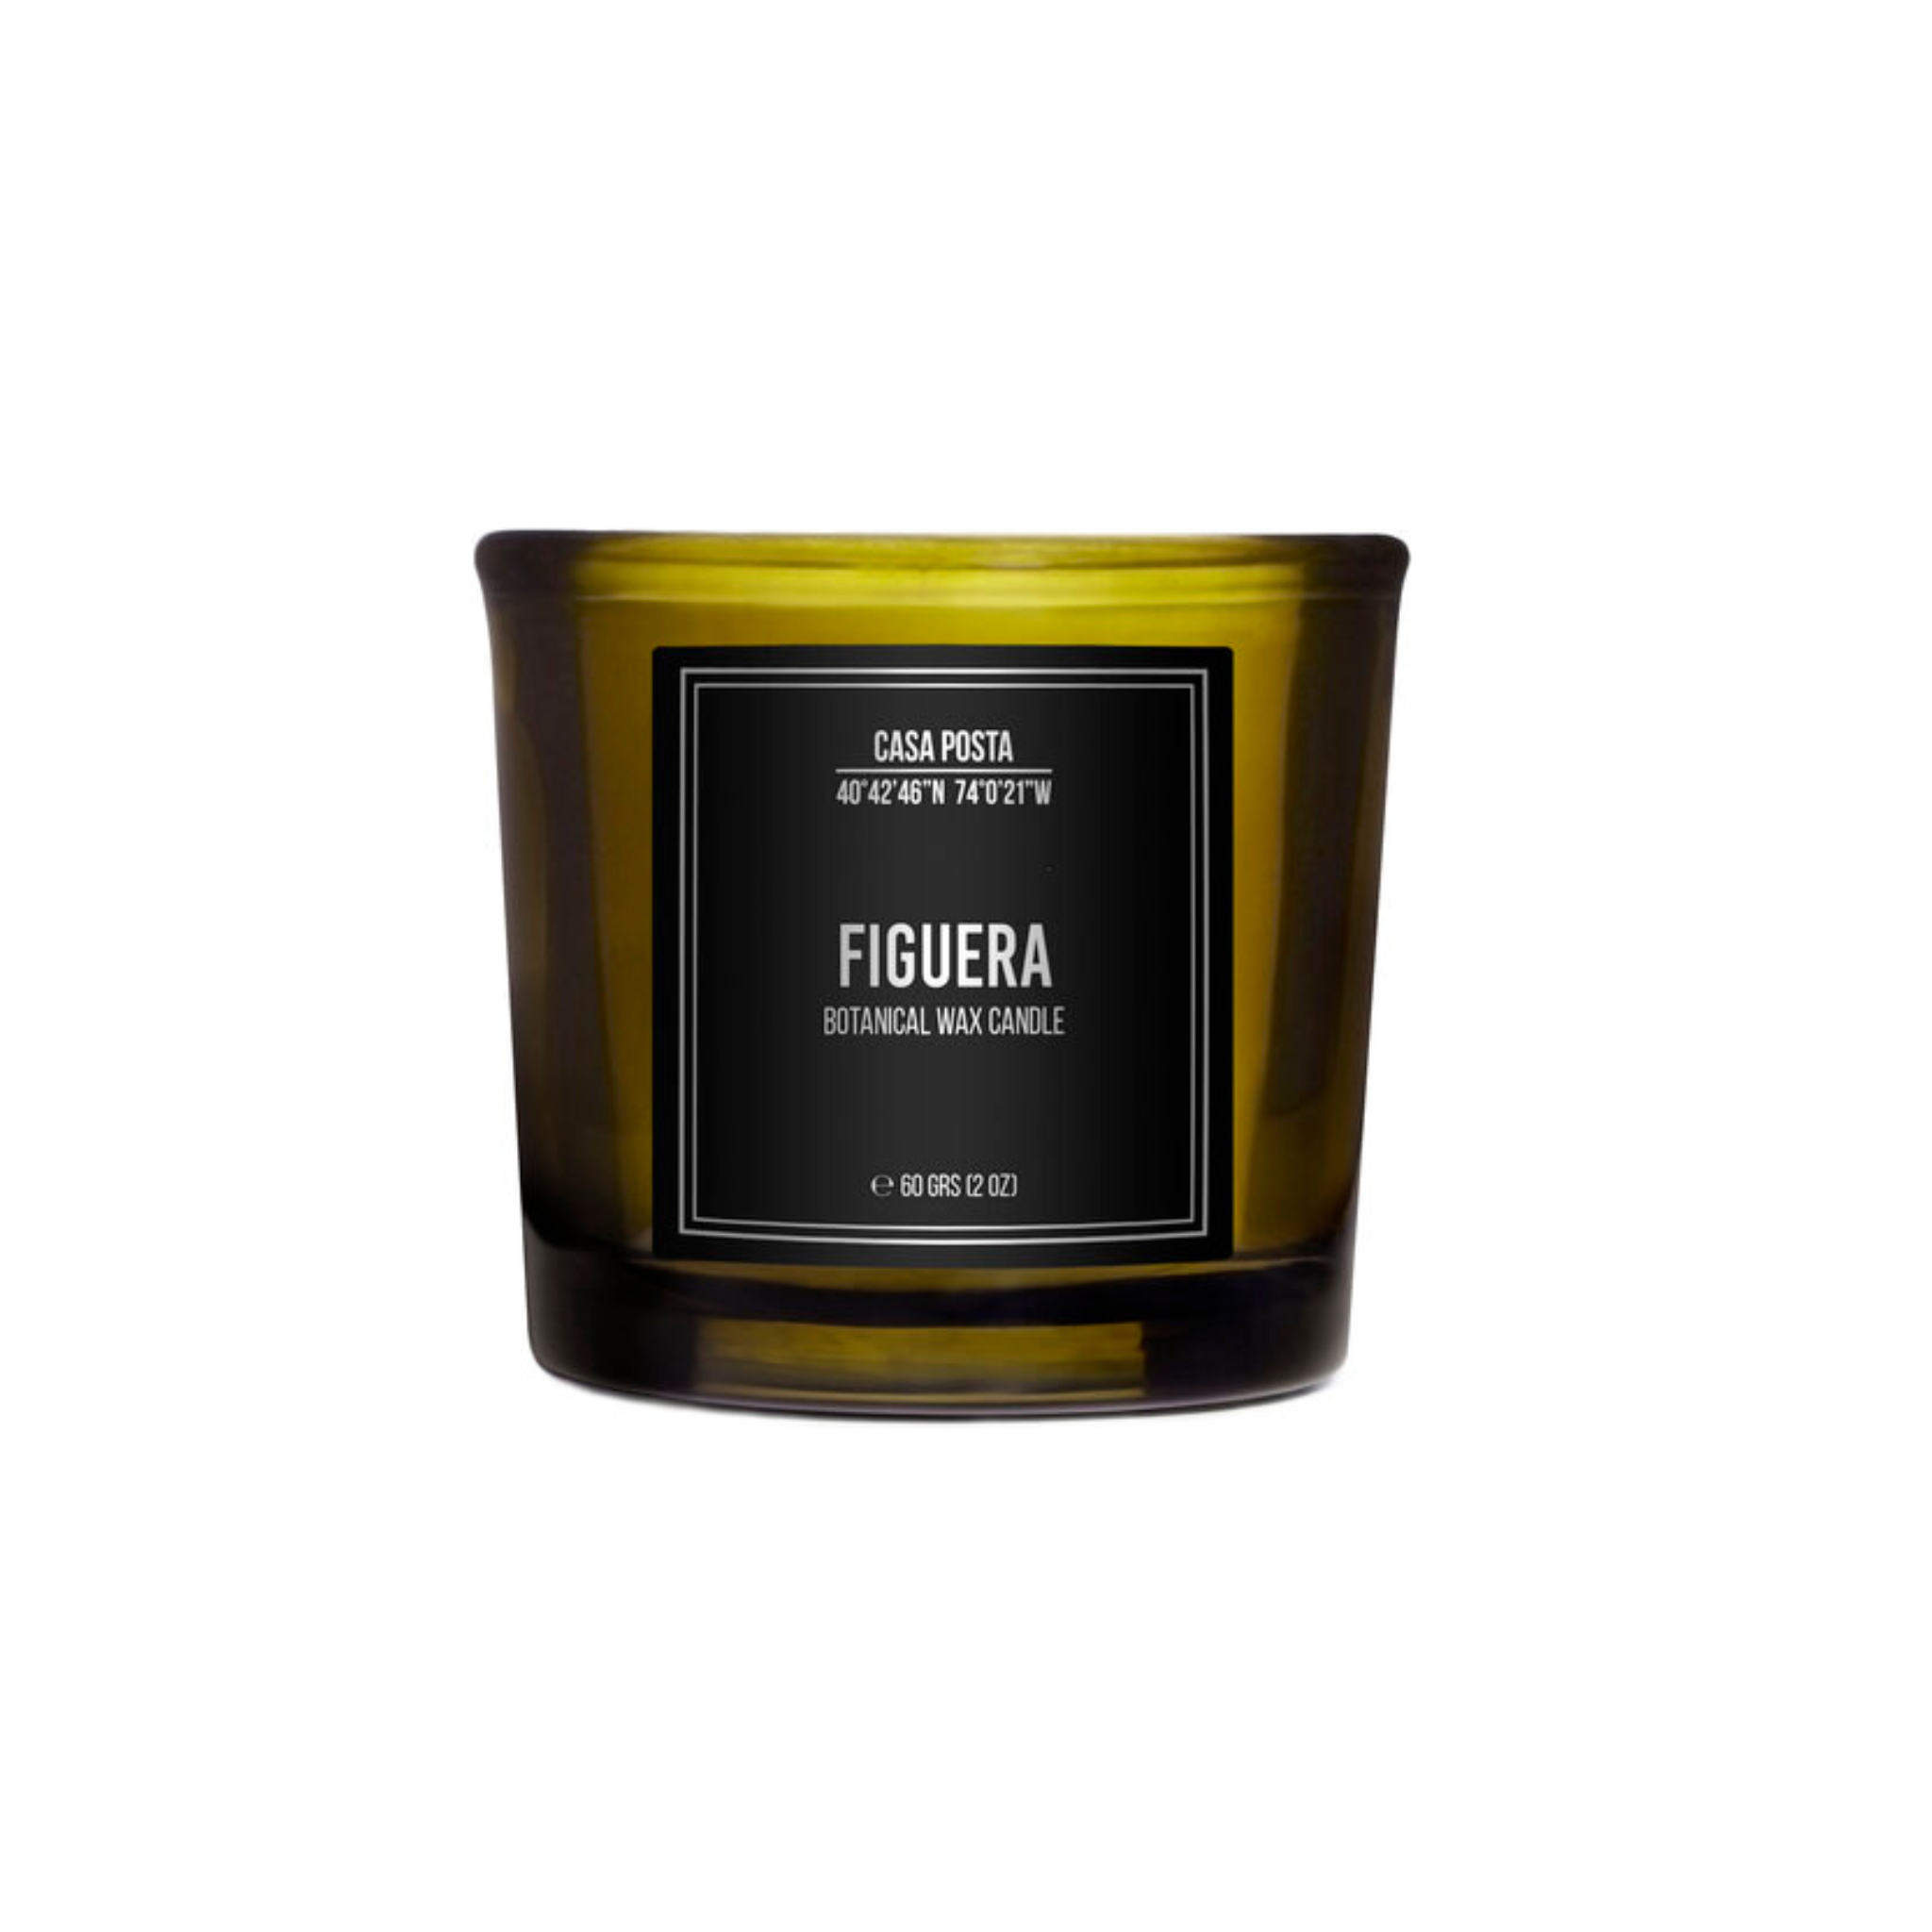 Casa Posta Figuera scented candle in black glass jar